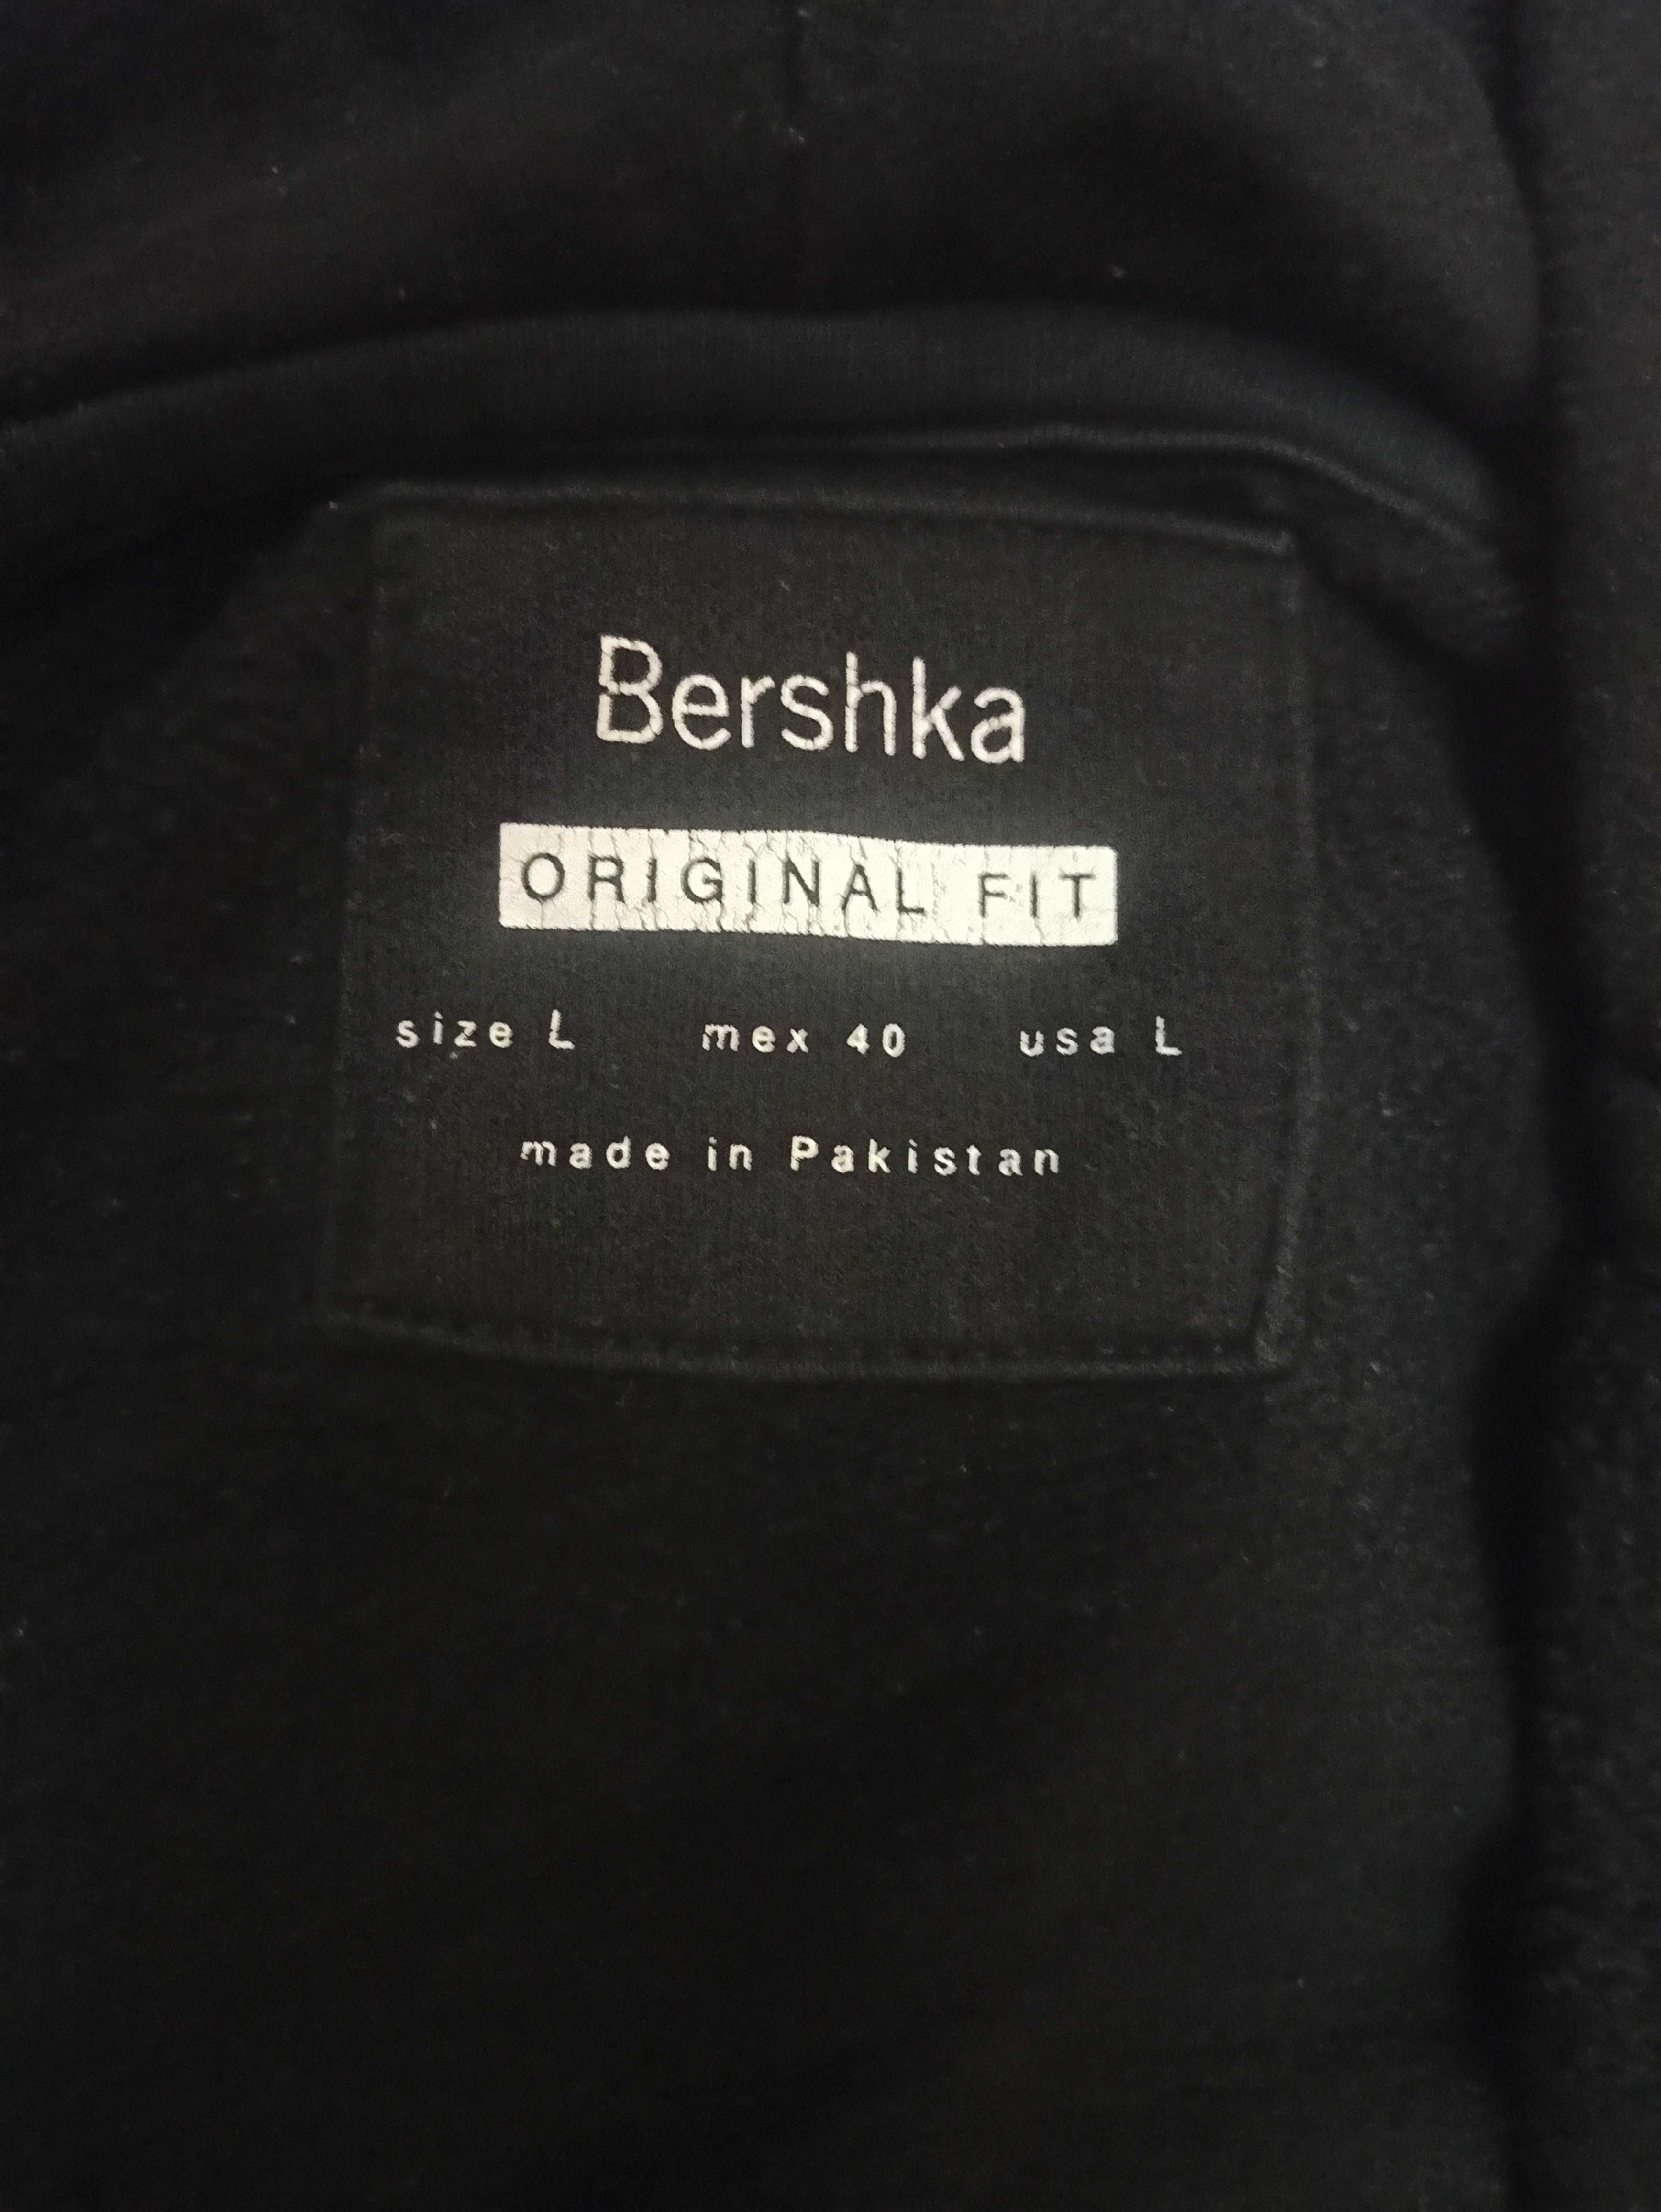 Мужская кофта Bershka (размер EUR L/MEX 40, цвет: черный)